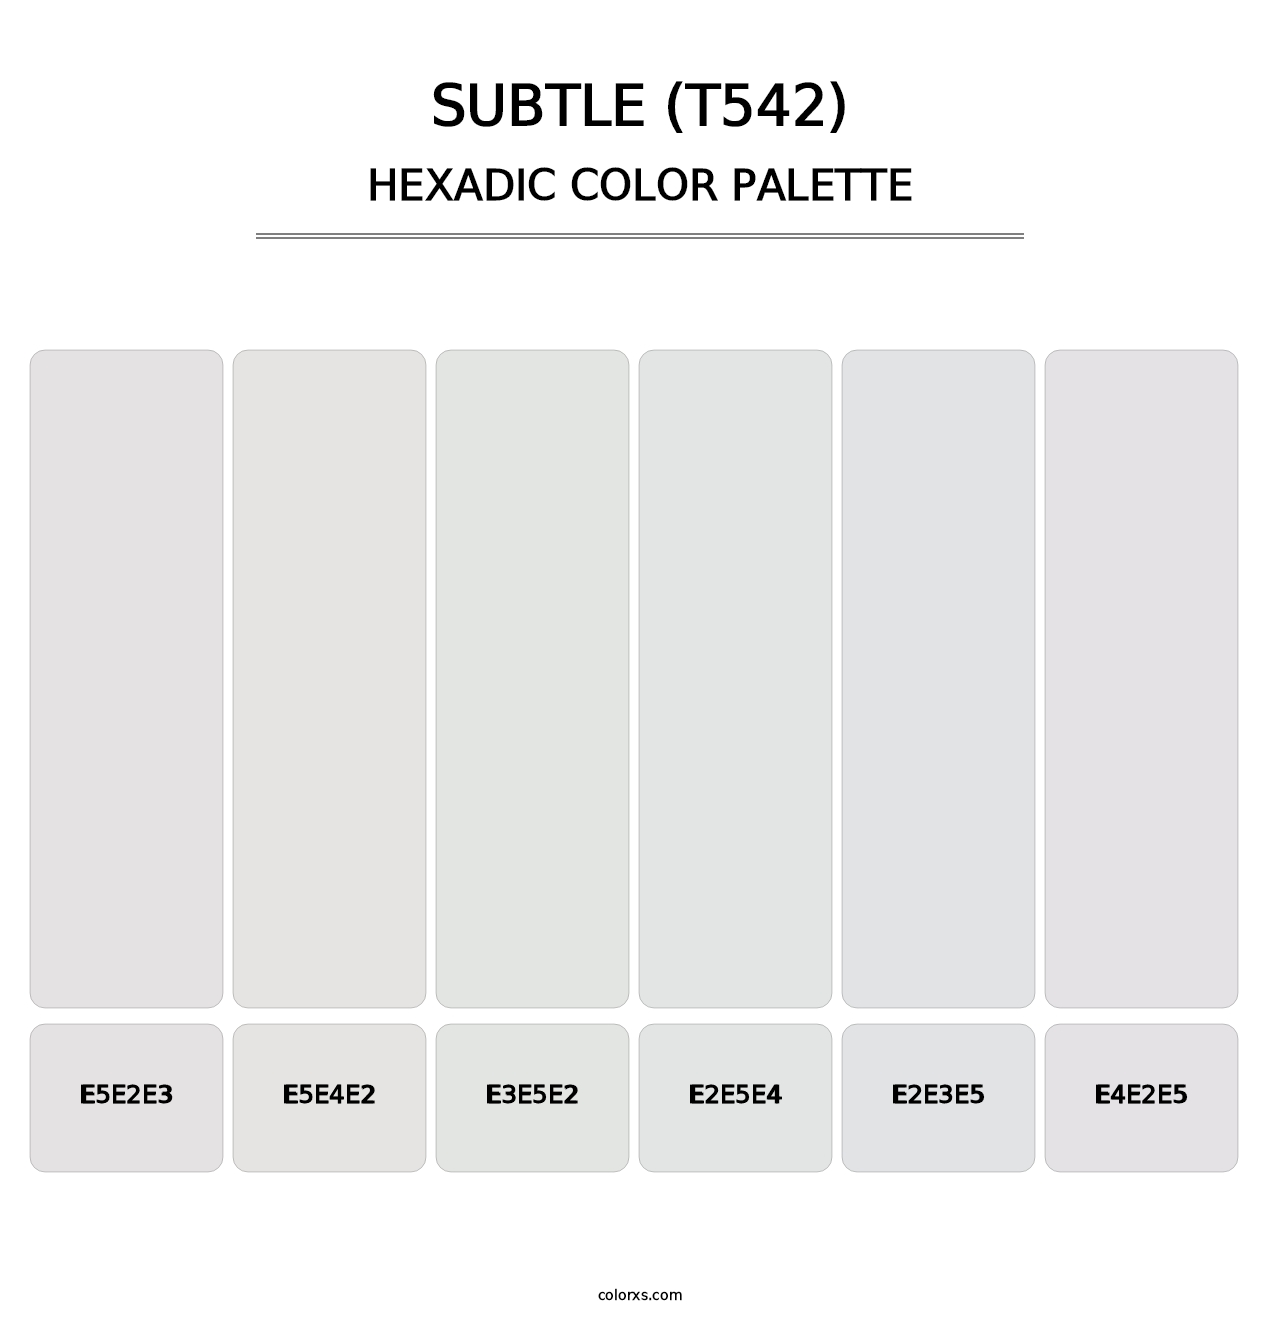 Subtle (T542) - Hexadic Color Palette